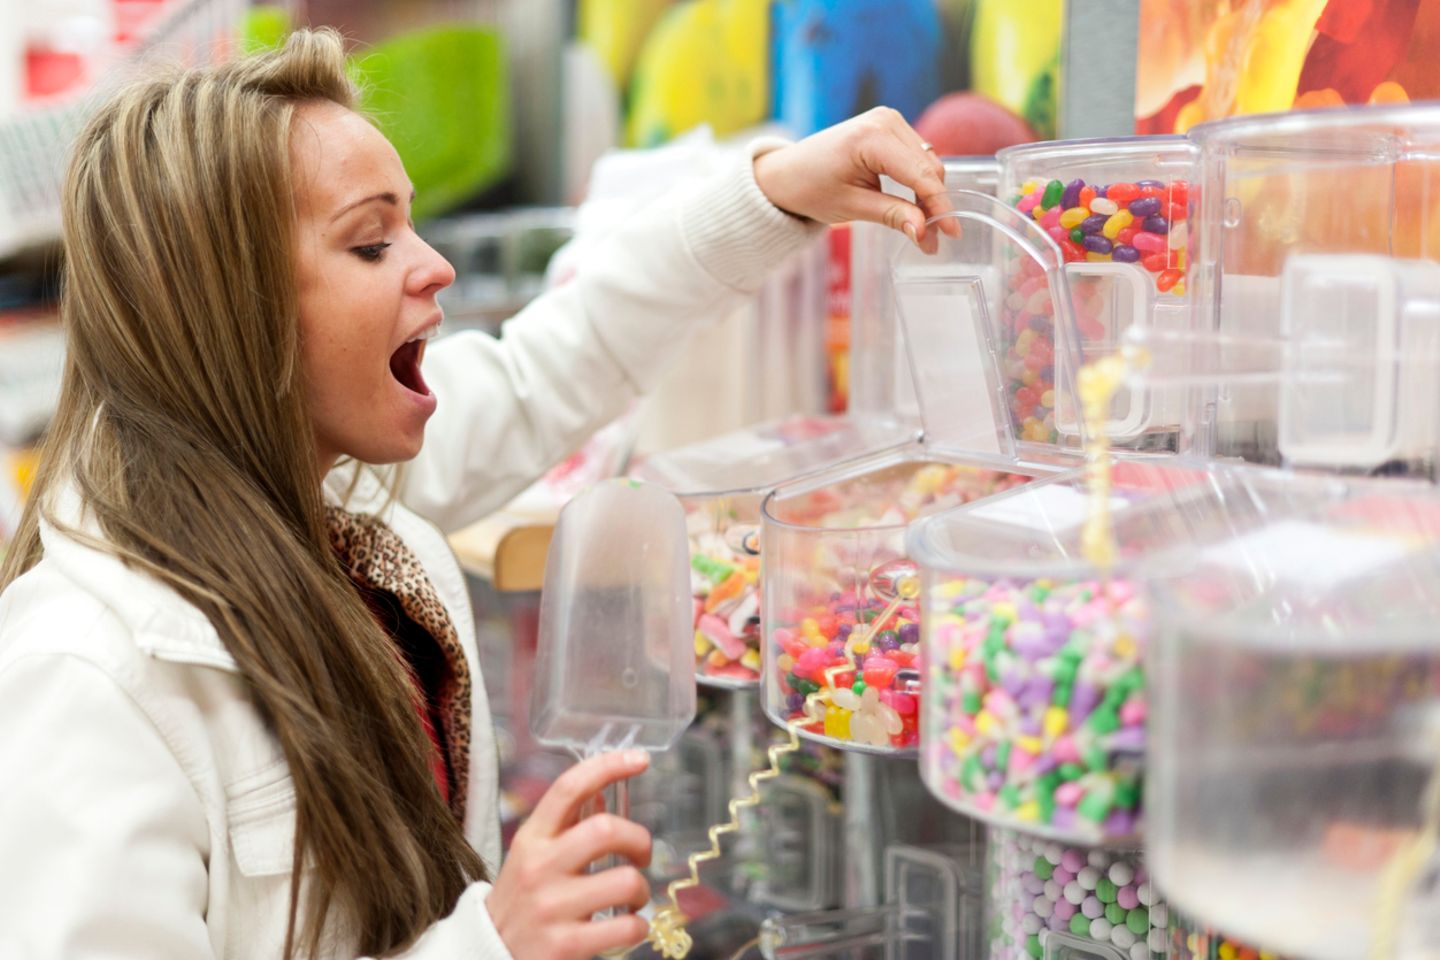 Fastenzeit: Frau öffnet einen Behälter mit Süßigkeiten